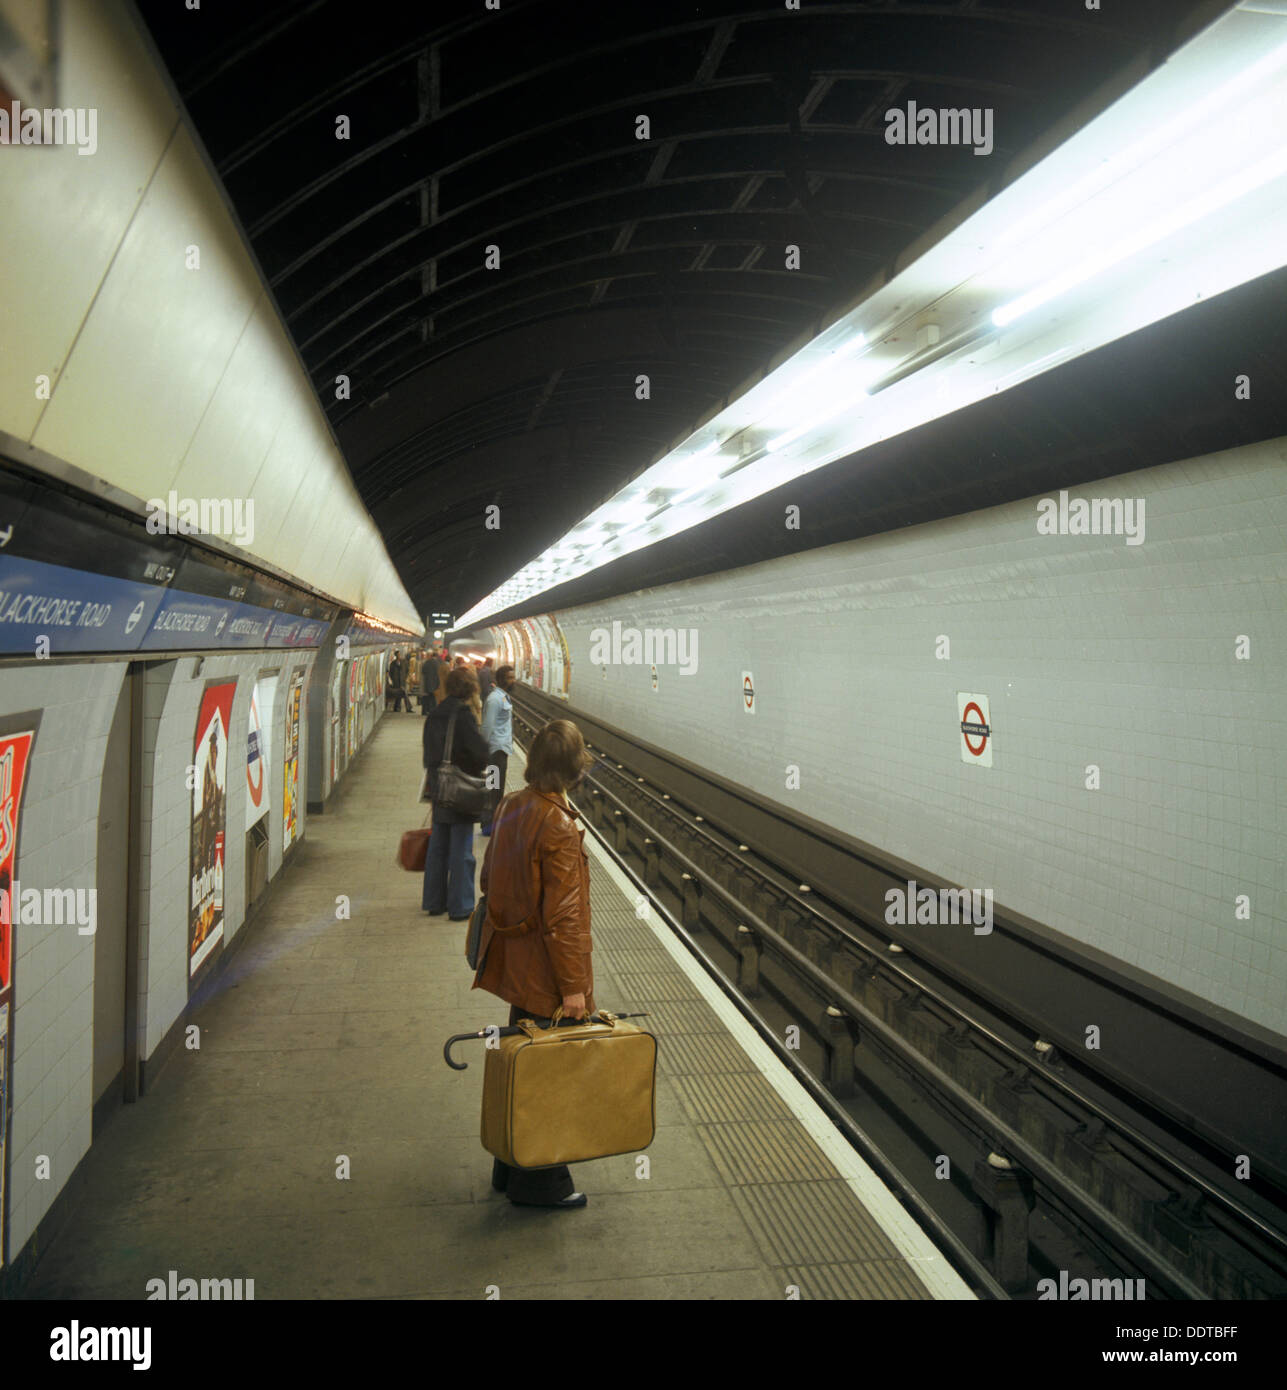 Les passagers qui attendent à la station de métro Blackhorse sur la ligne Victoria, Londres, 1974. Artiste : Michael Walters Banque D'Images